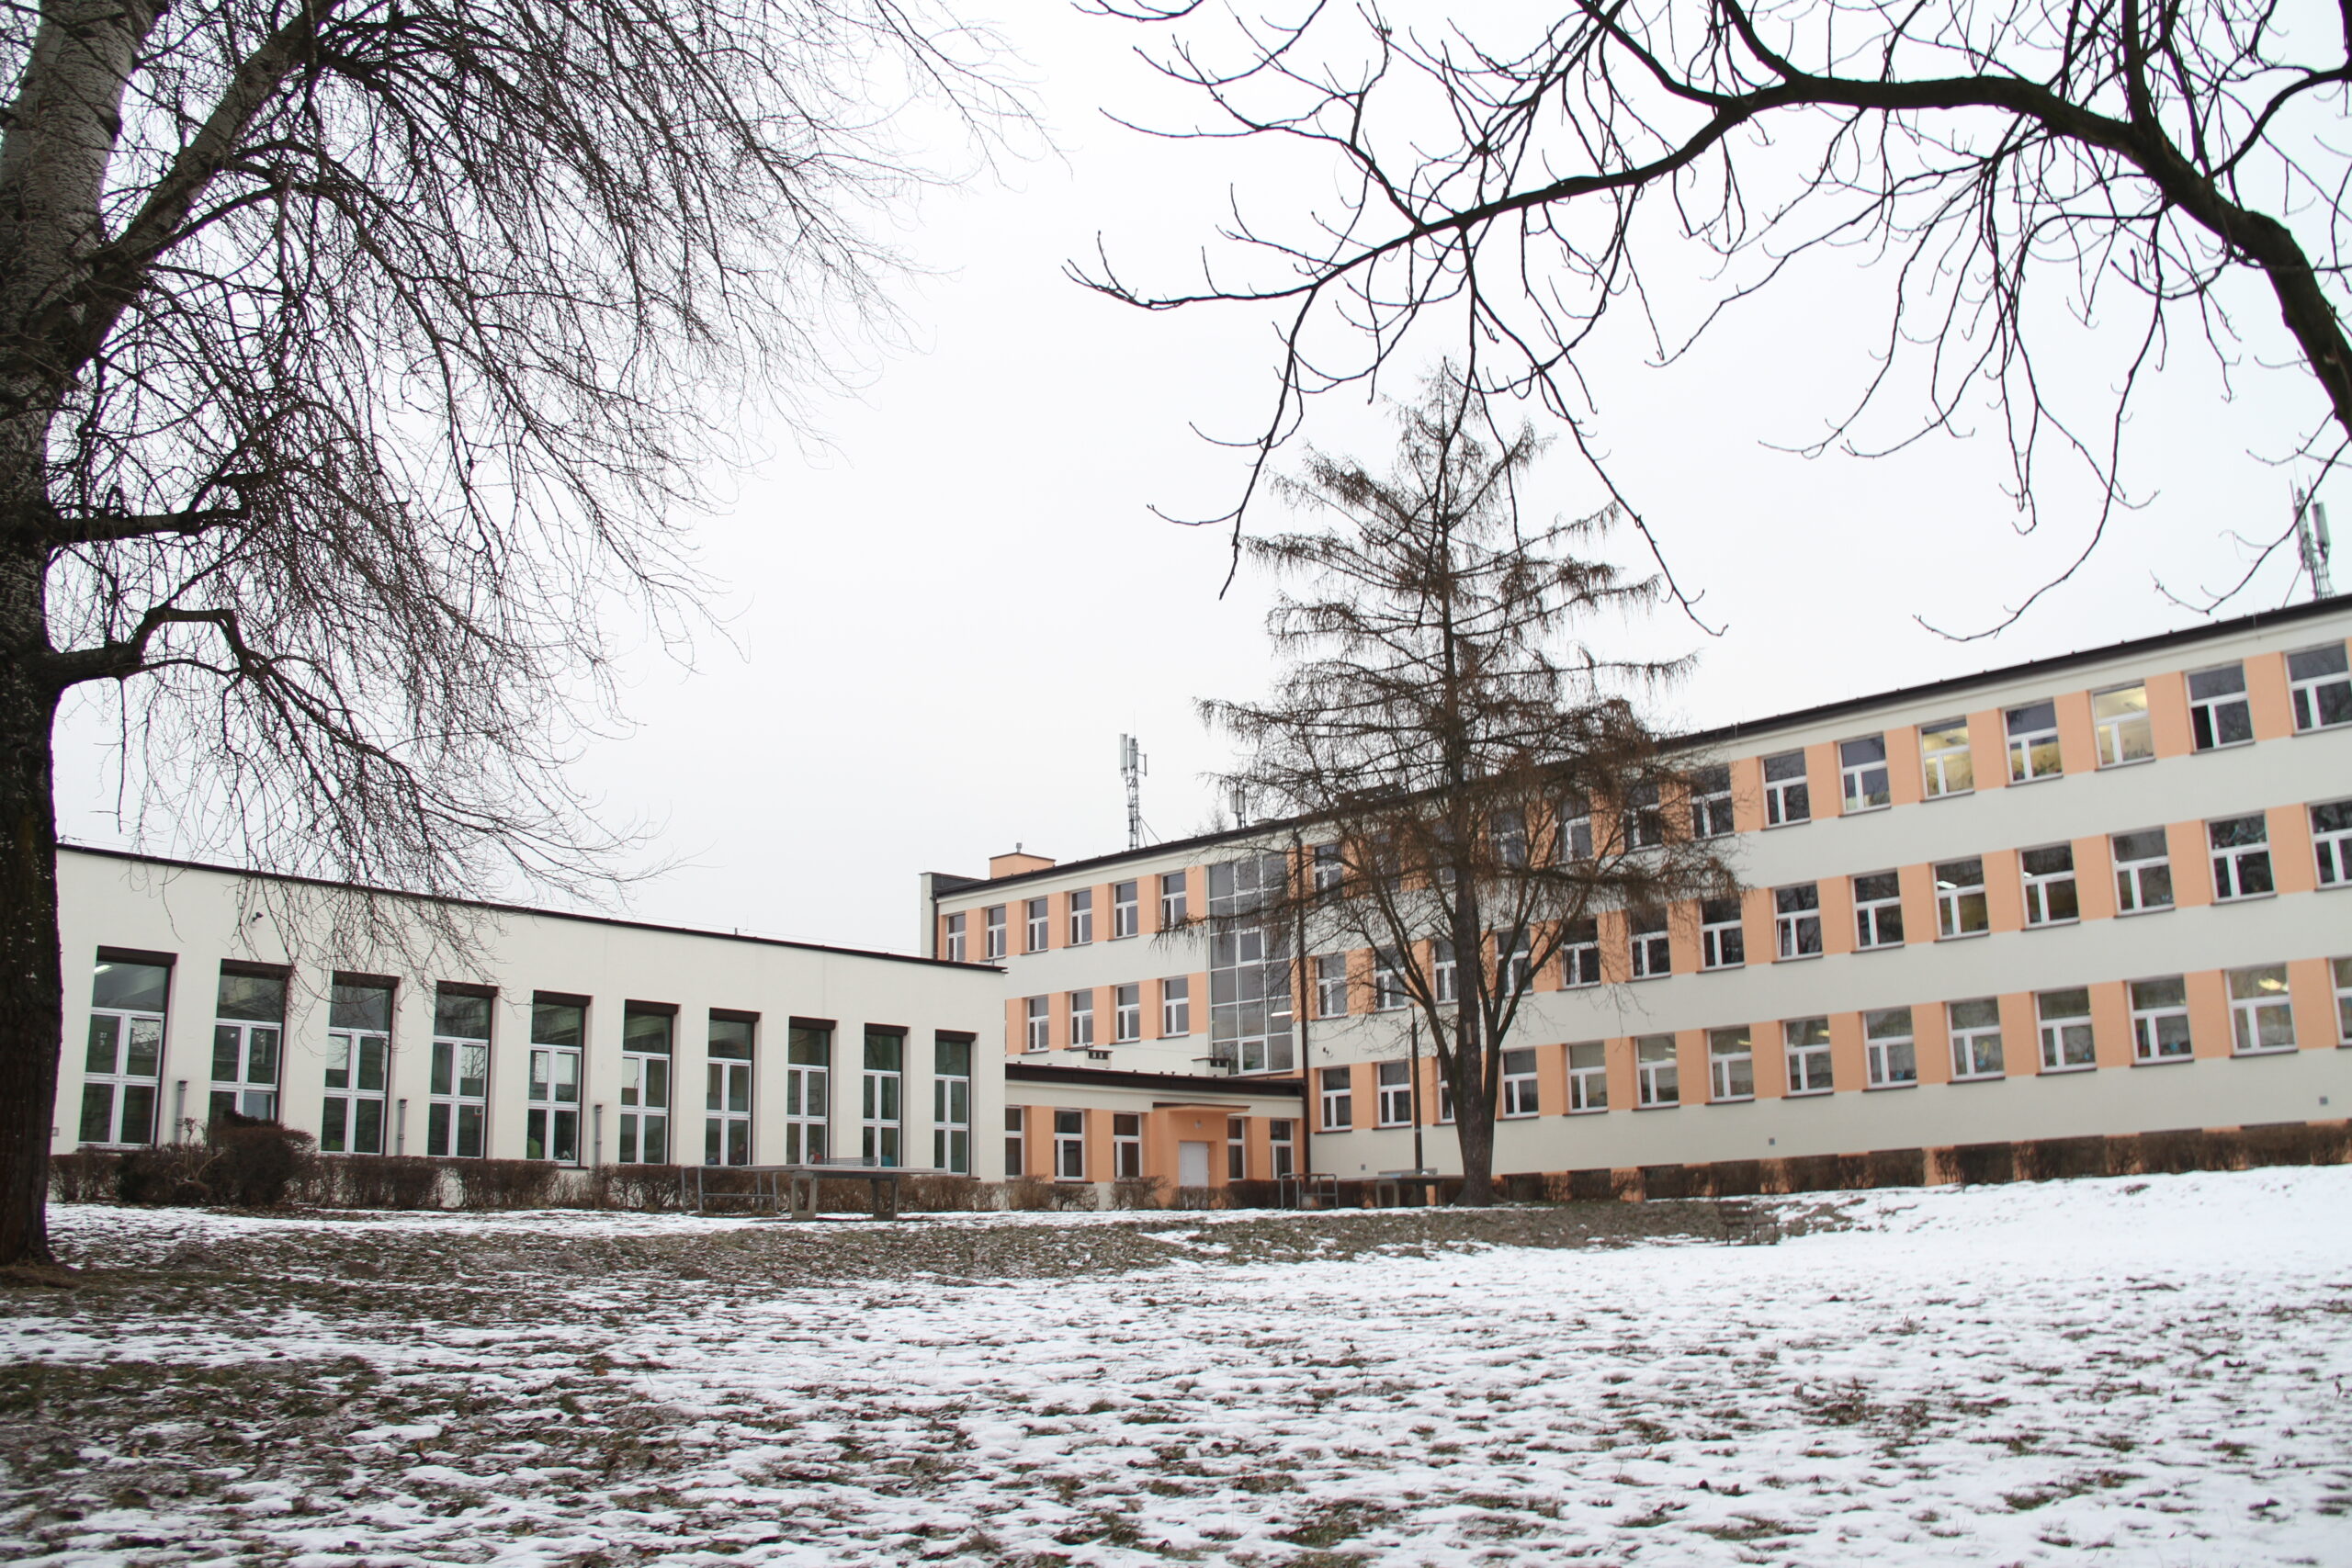 Zdjęcie przedstawia fotografię szkoły od strony wewnętrznej podczas zimy. Po lewej znajduje się sala gimnastyczna, a po prawej budynek szkoły.